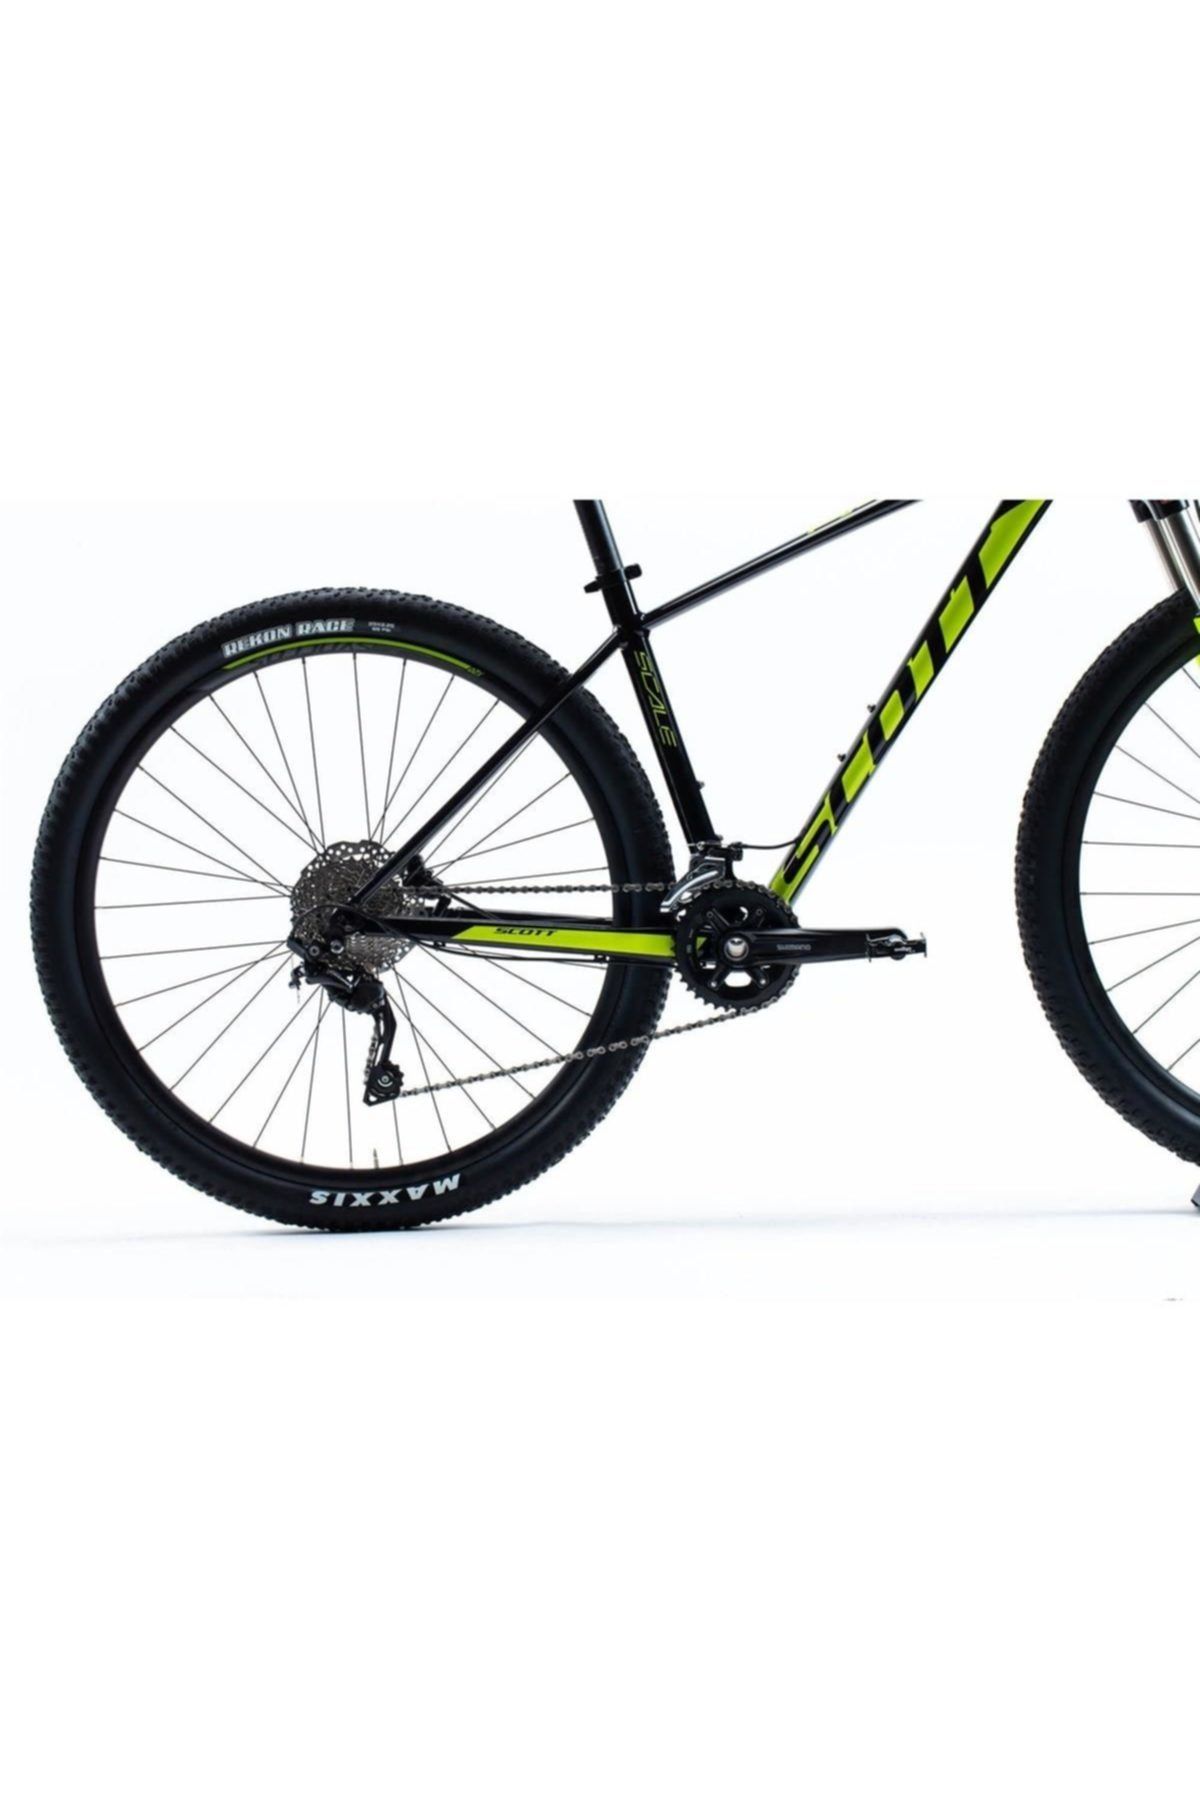 SCOTT Scale 990 29 Jant Alüminyum Dağ Bisikleti 2019 Model